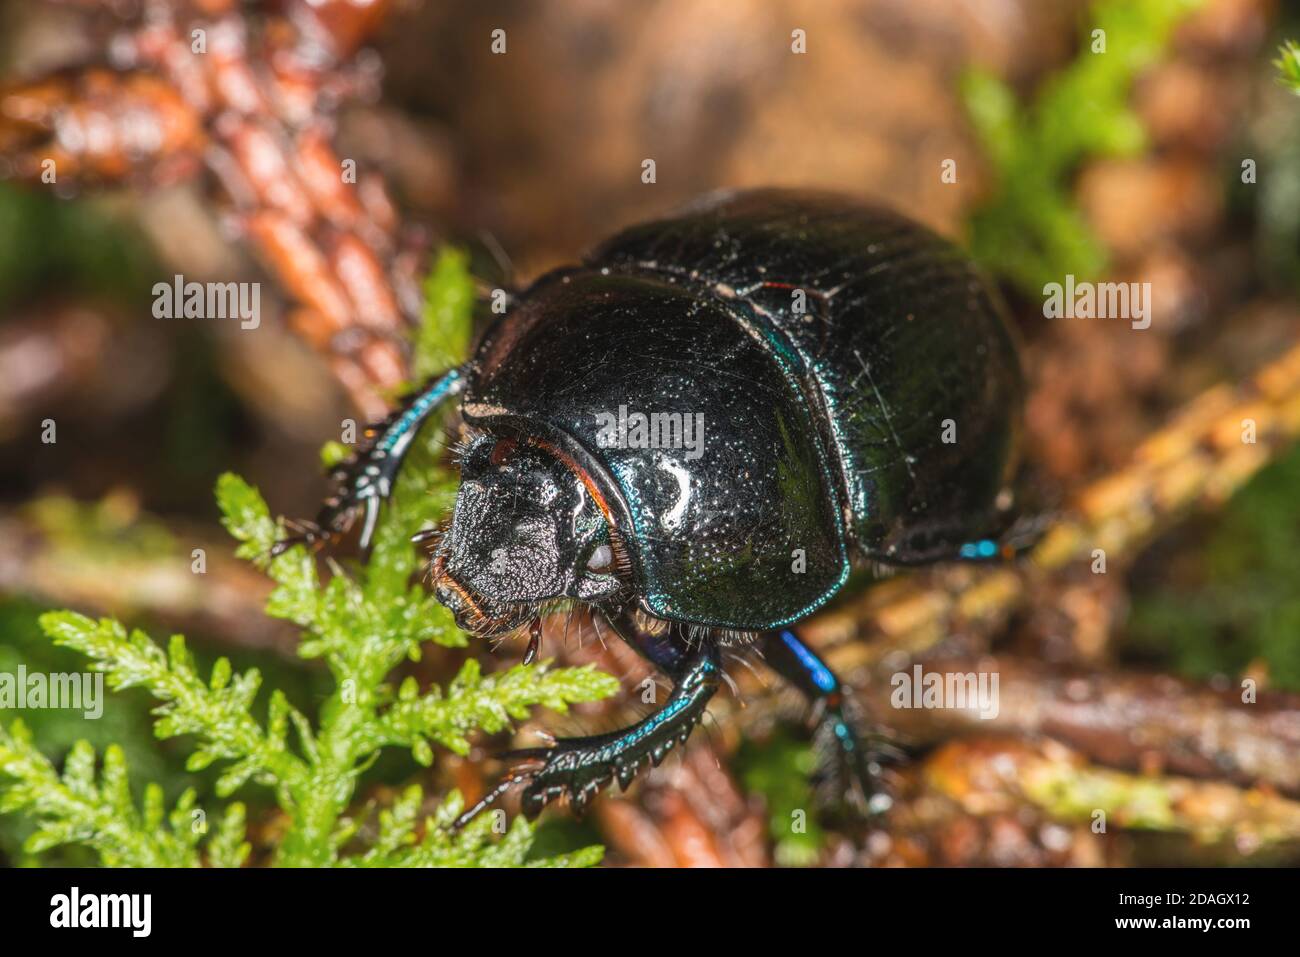 Dor común escarabajo (Anoplotrupes stercorosus, Geotrupes stercorosus), sobre el piso del bosque, Alemania Foto de stock